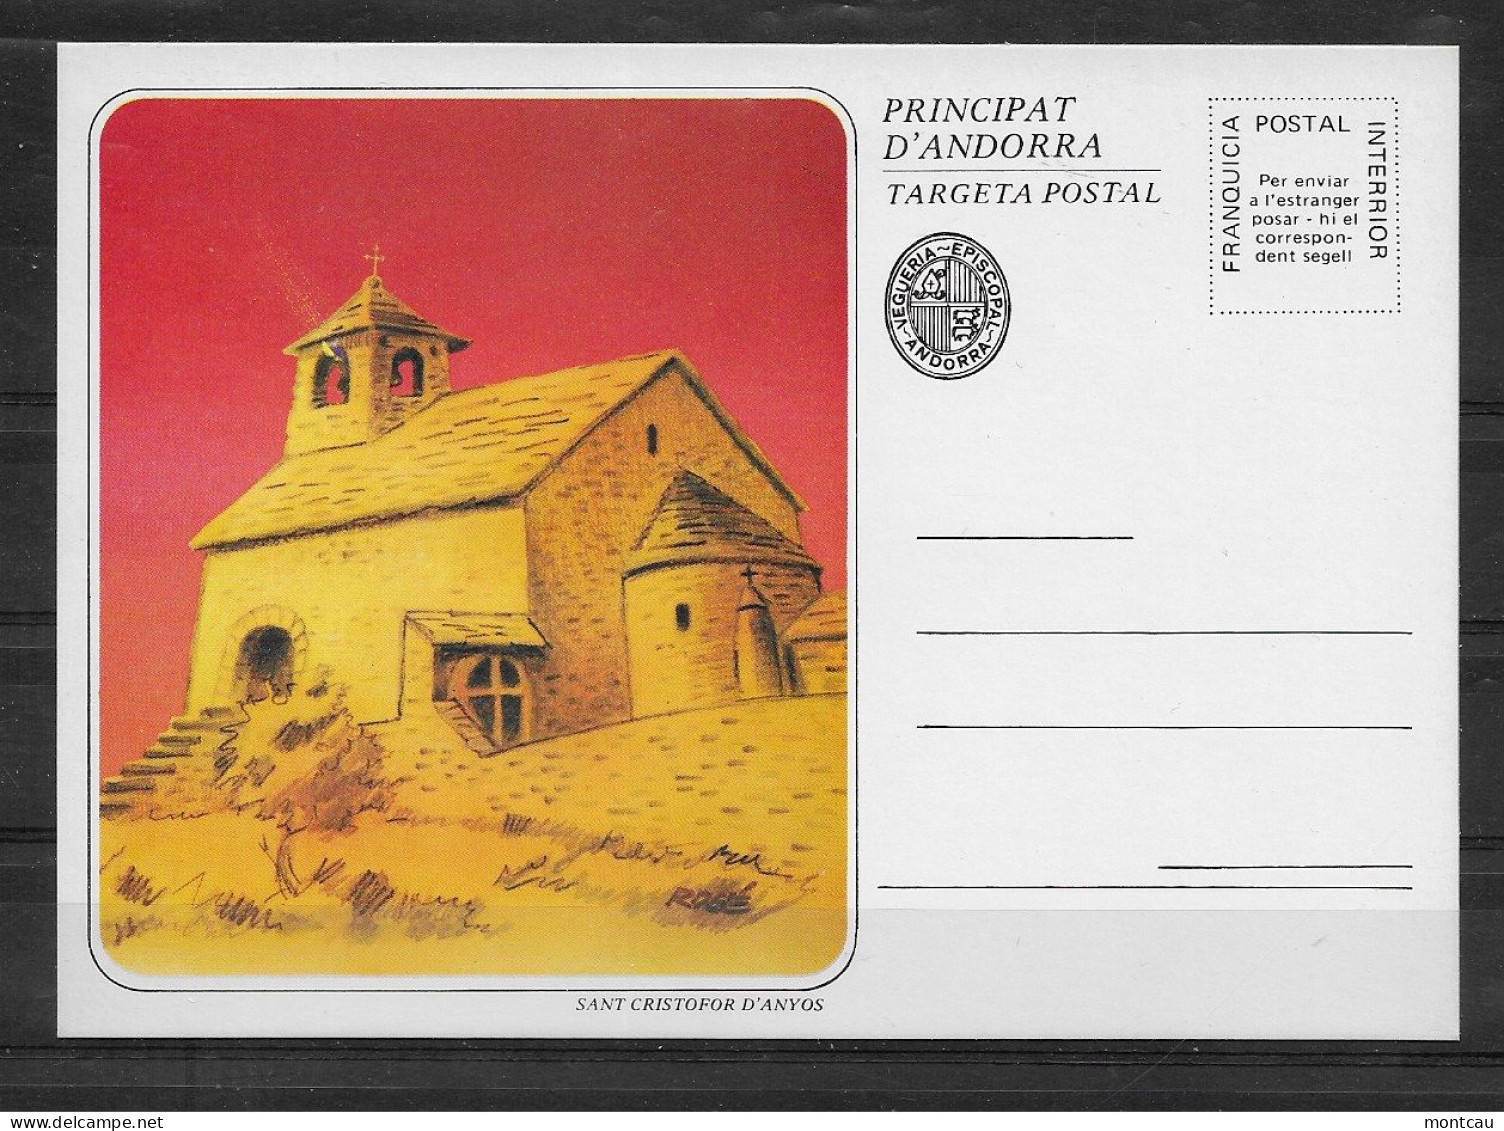 Andorra - Targeta Postal - Vegueria Episcopal